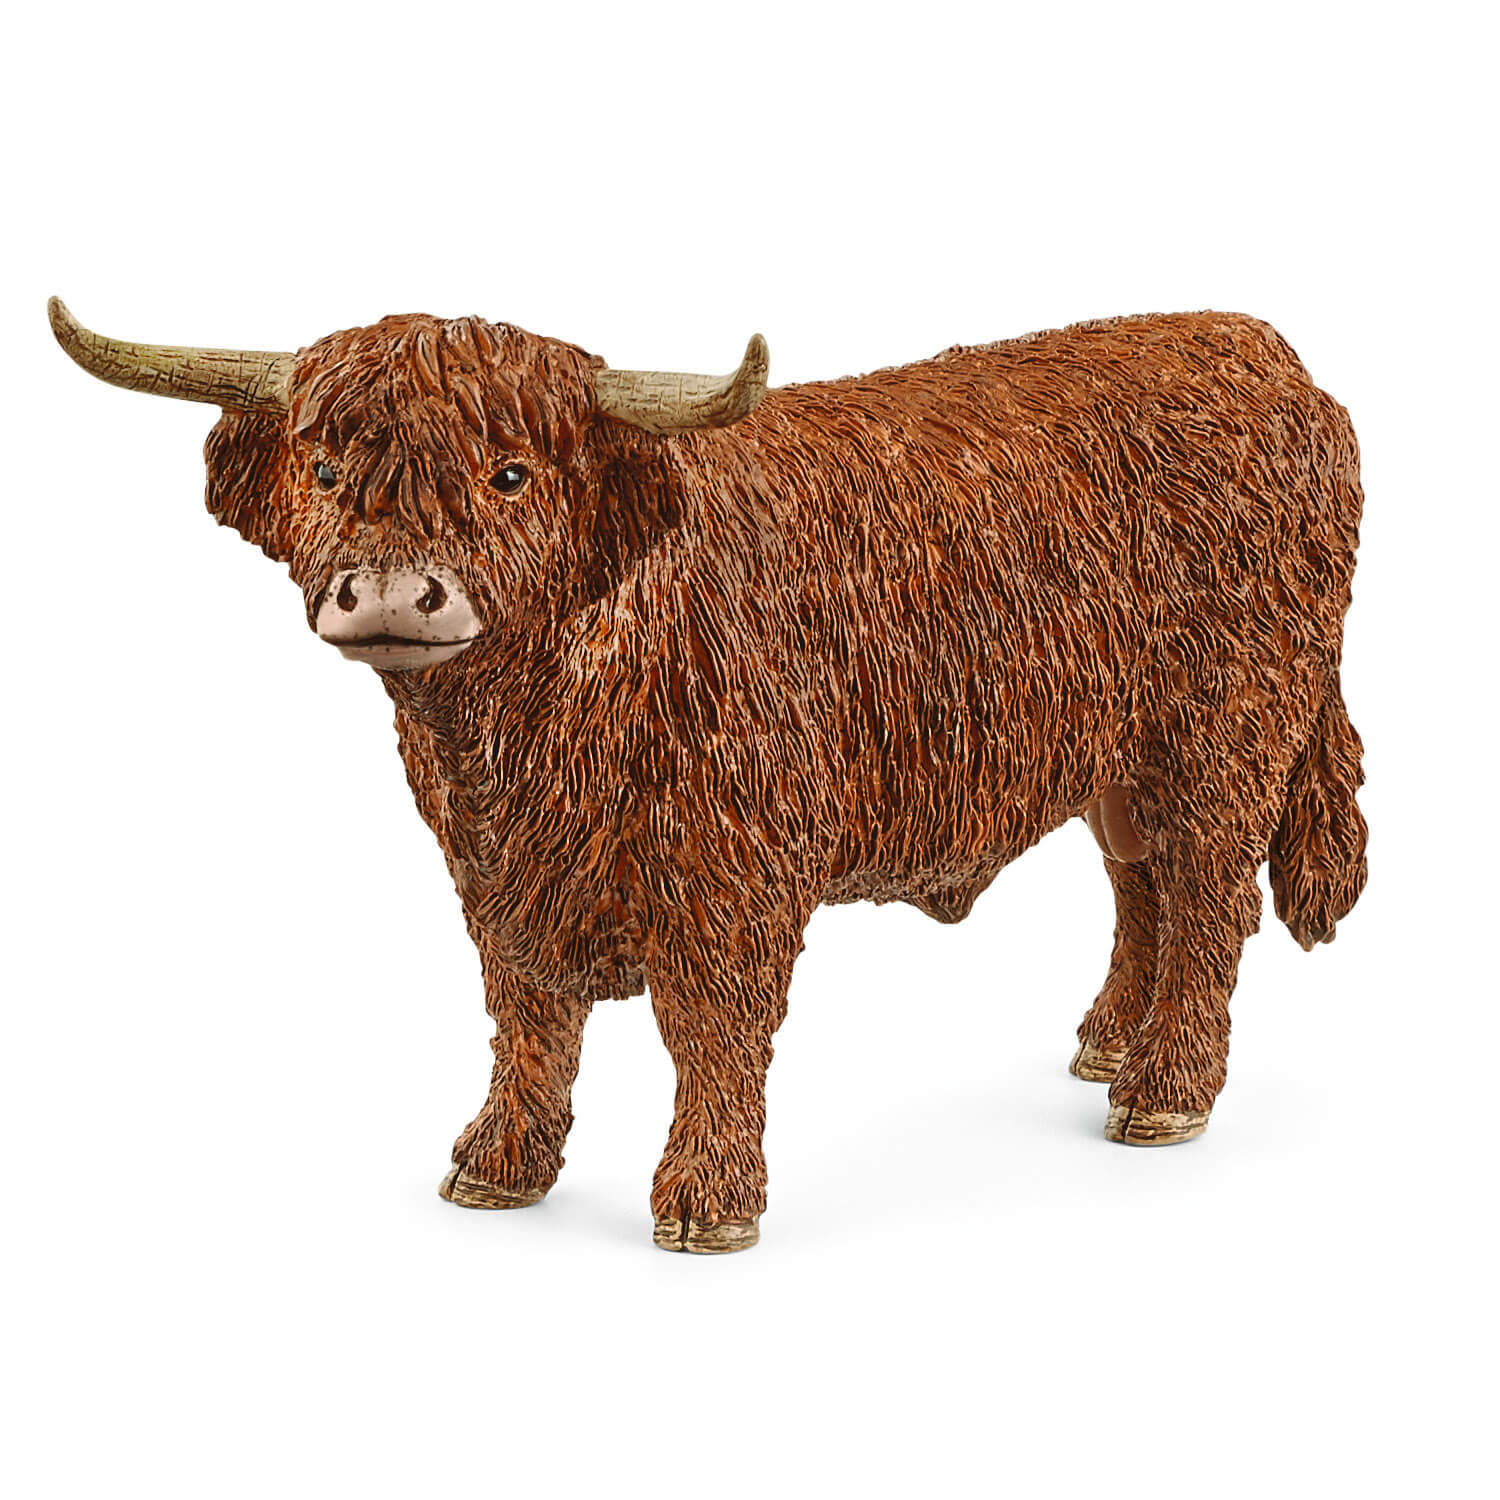 Schleich Farm World Highland Bull Animal Figure (13919)